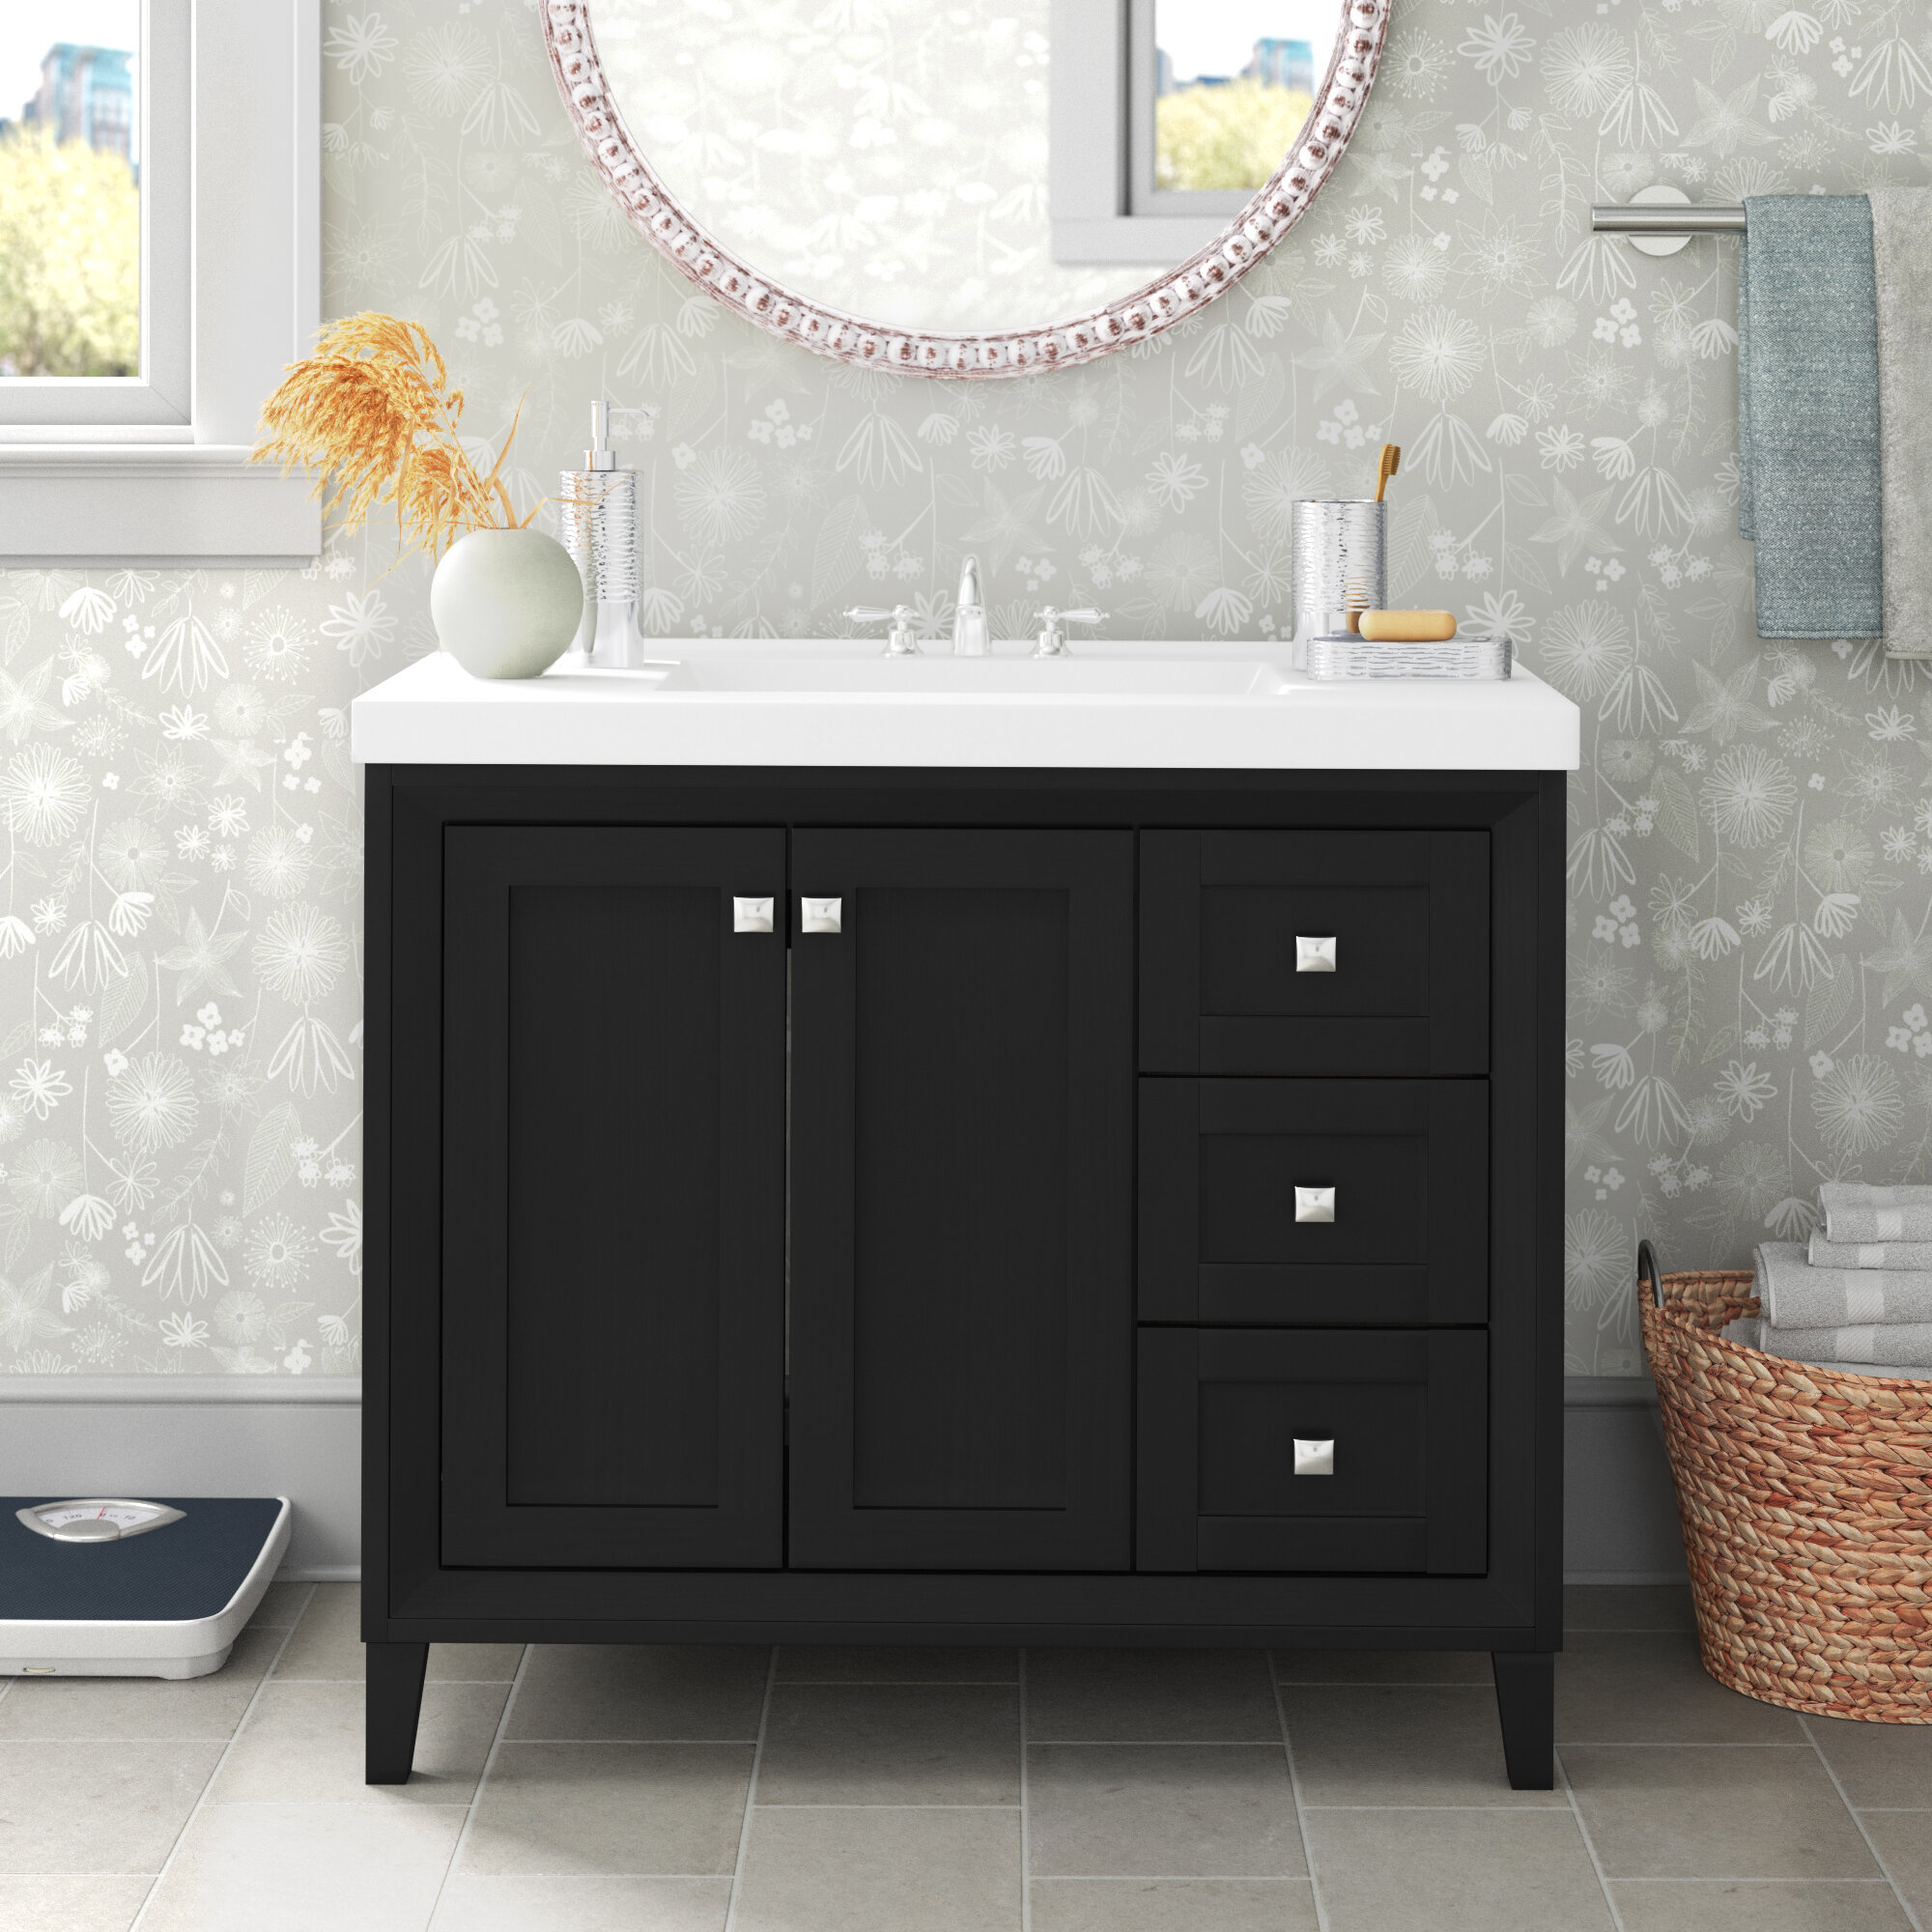 Three Posts Ingersoll 37 Single Bathroom Vanity Set Reviews Wayfair